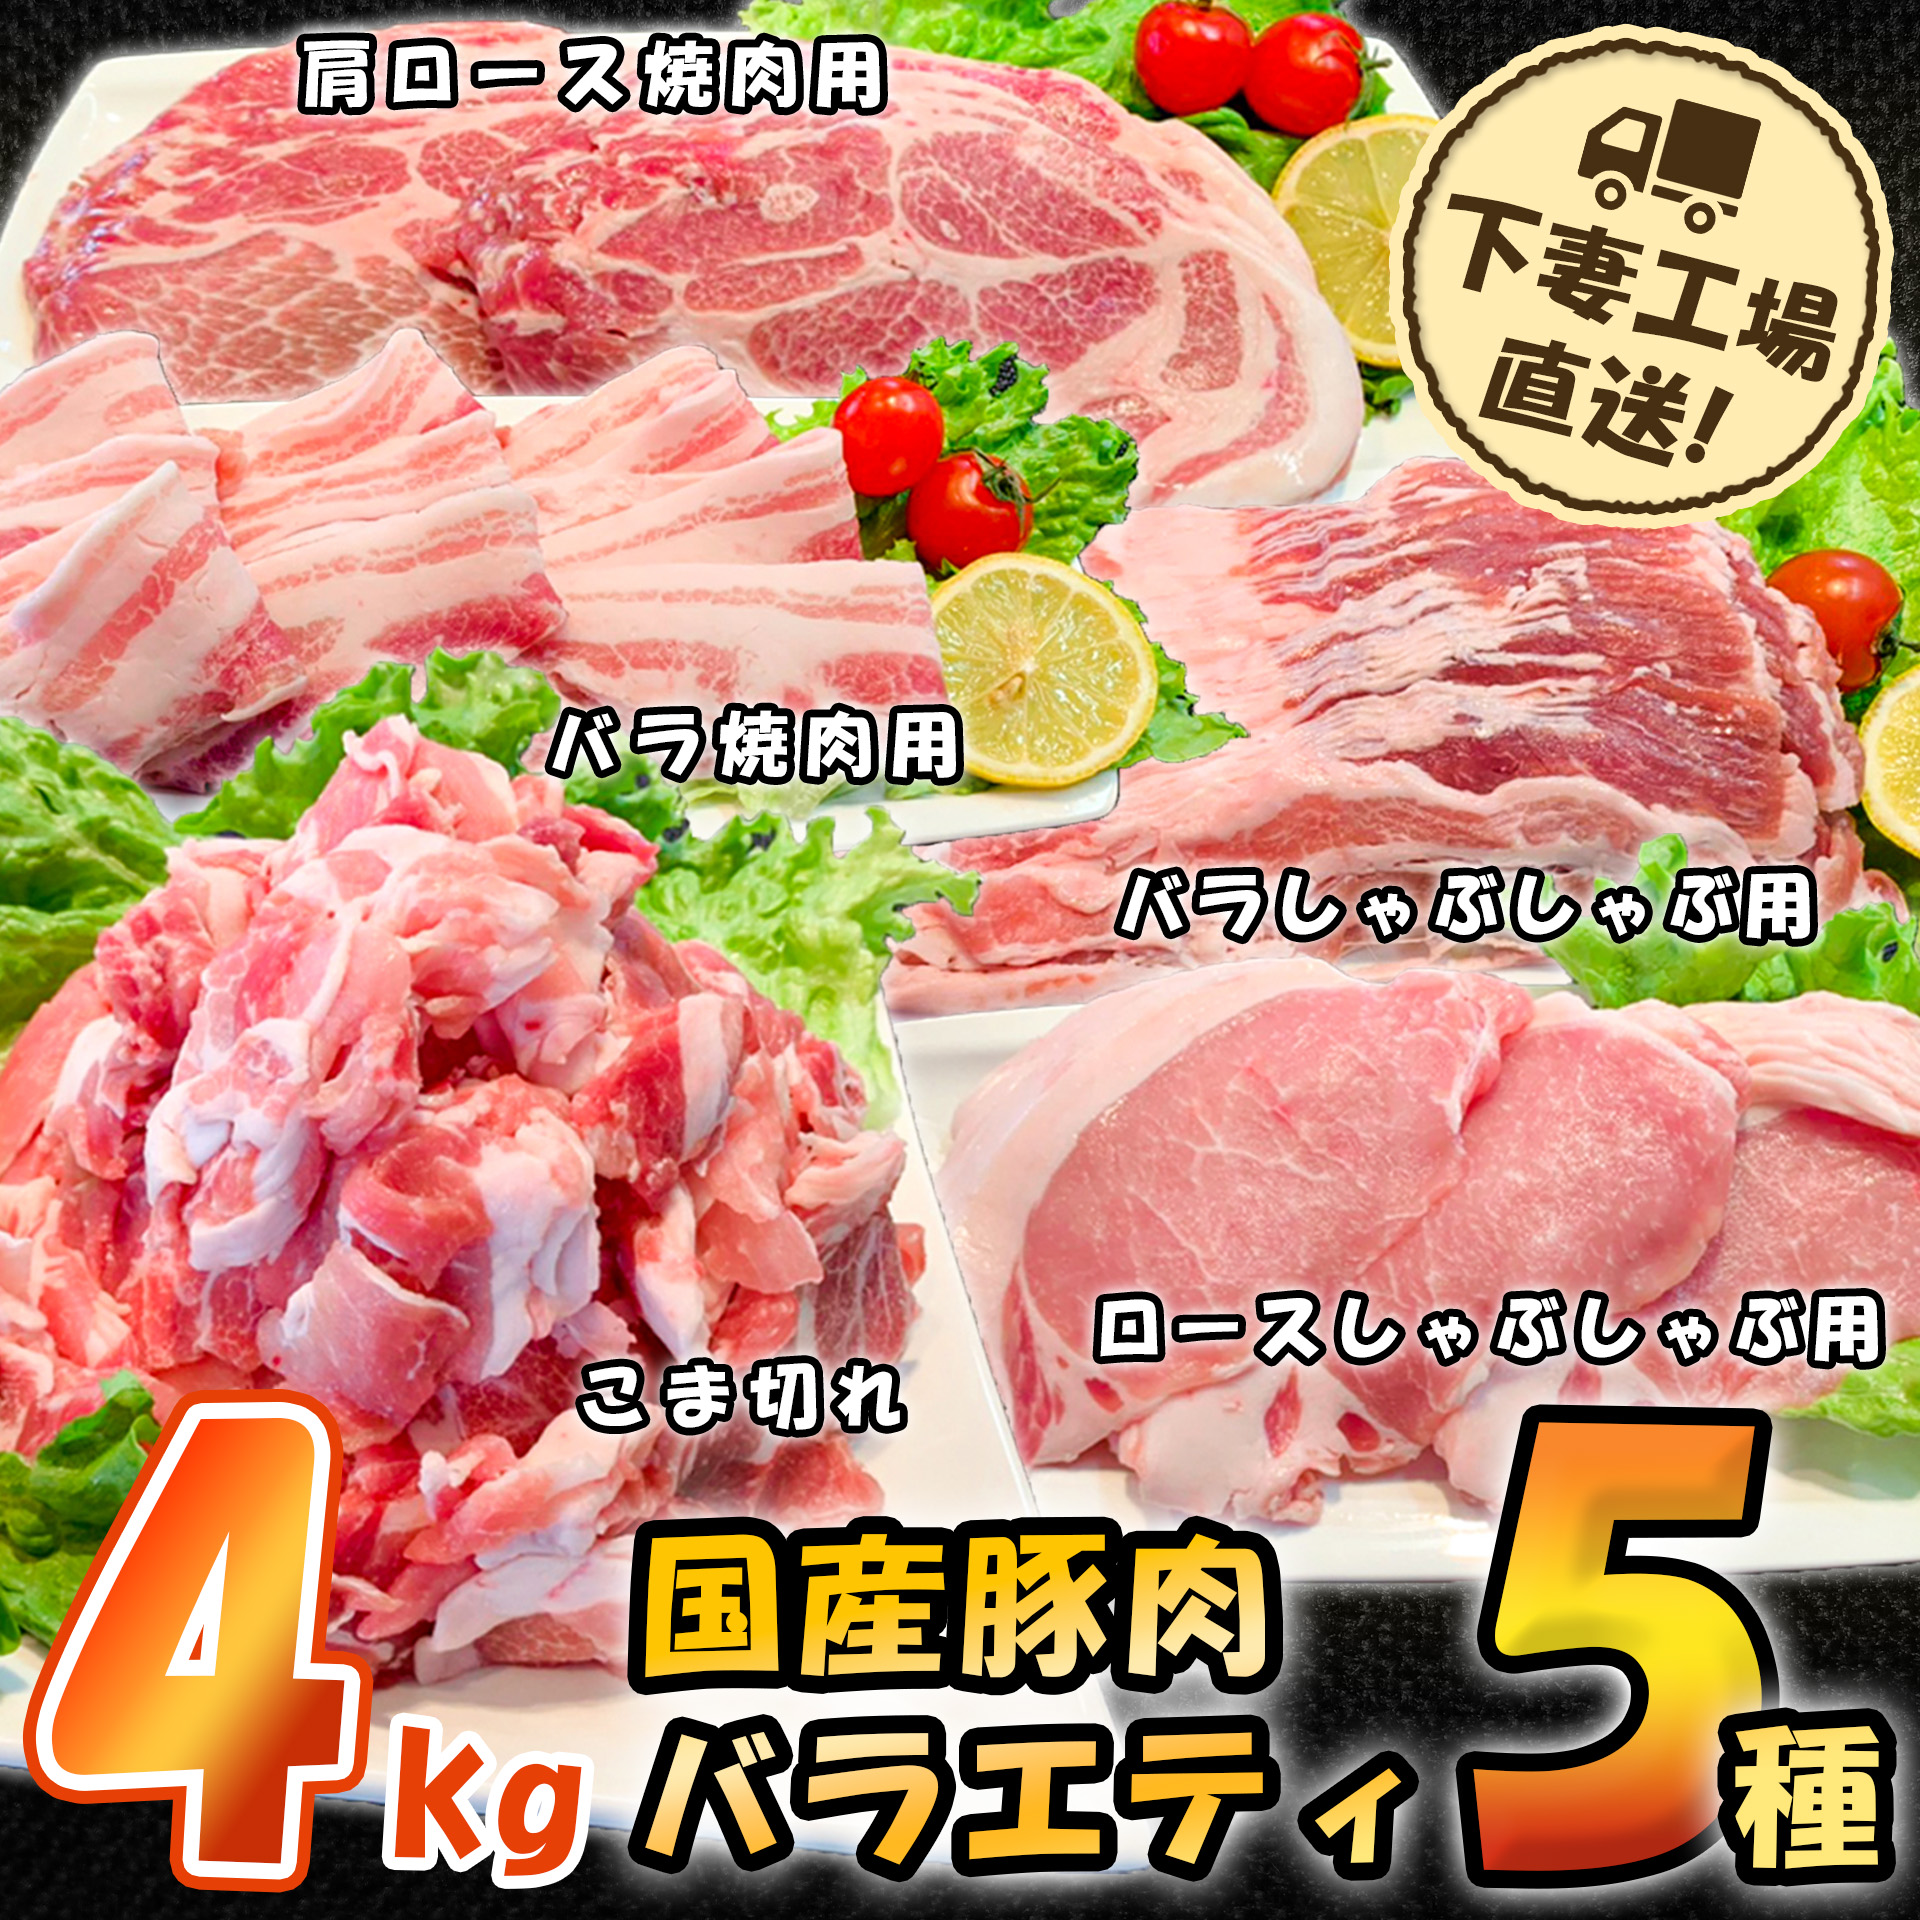 国産豚肉バラエティ5種セット4kg